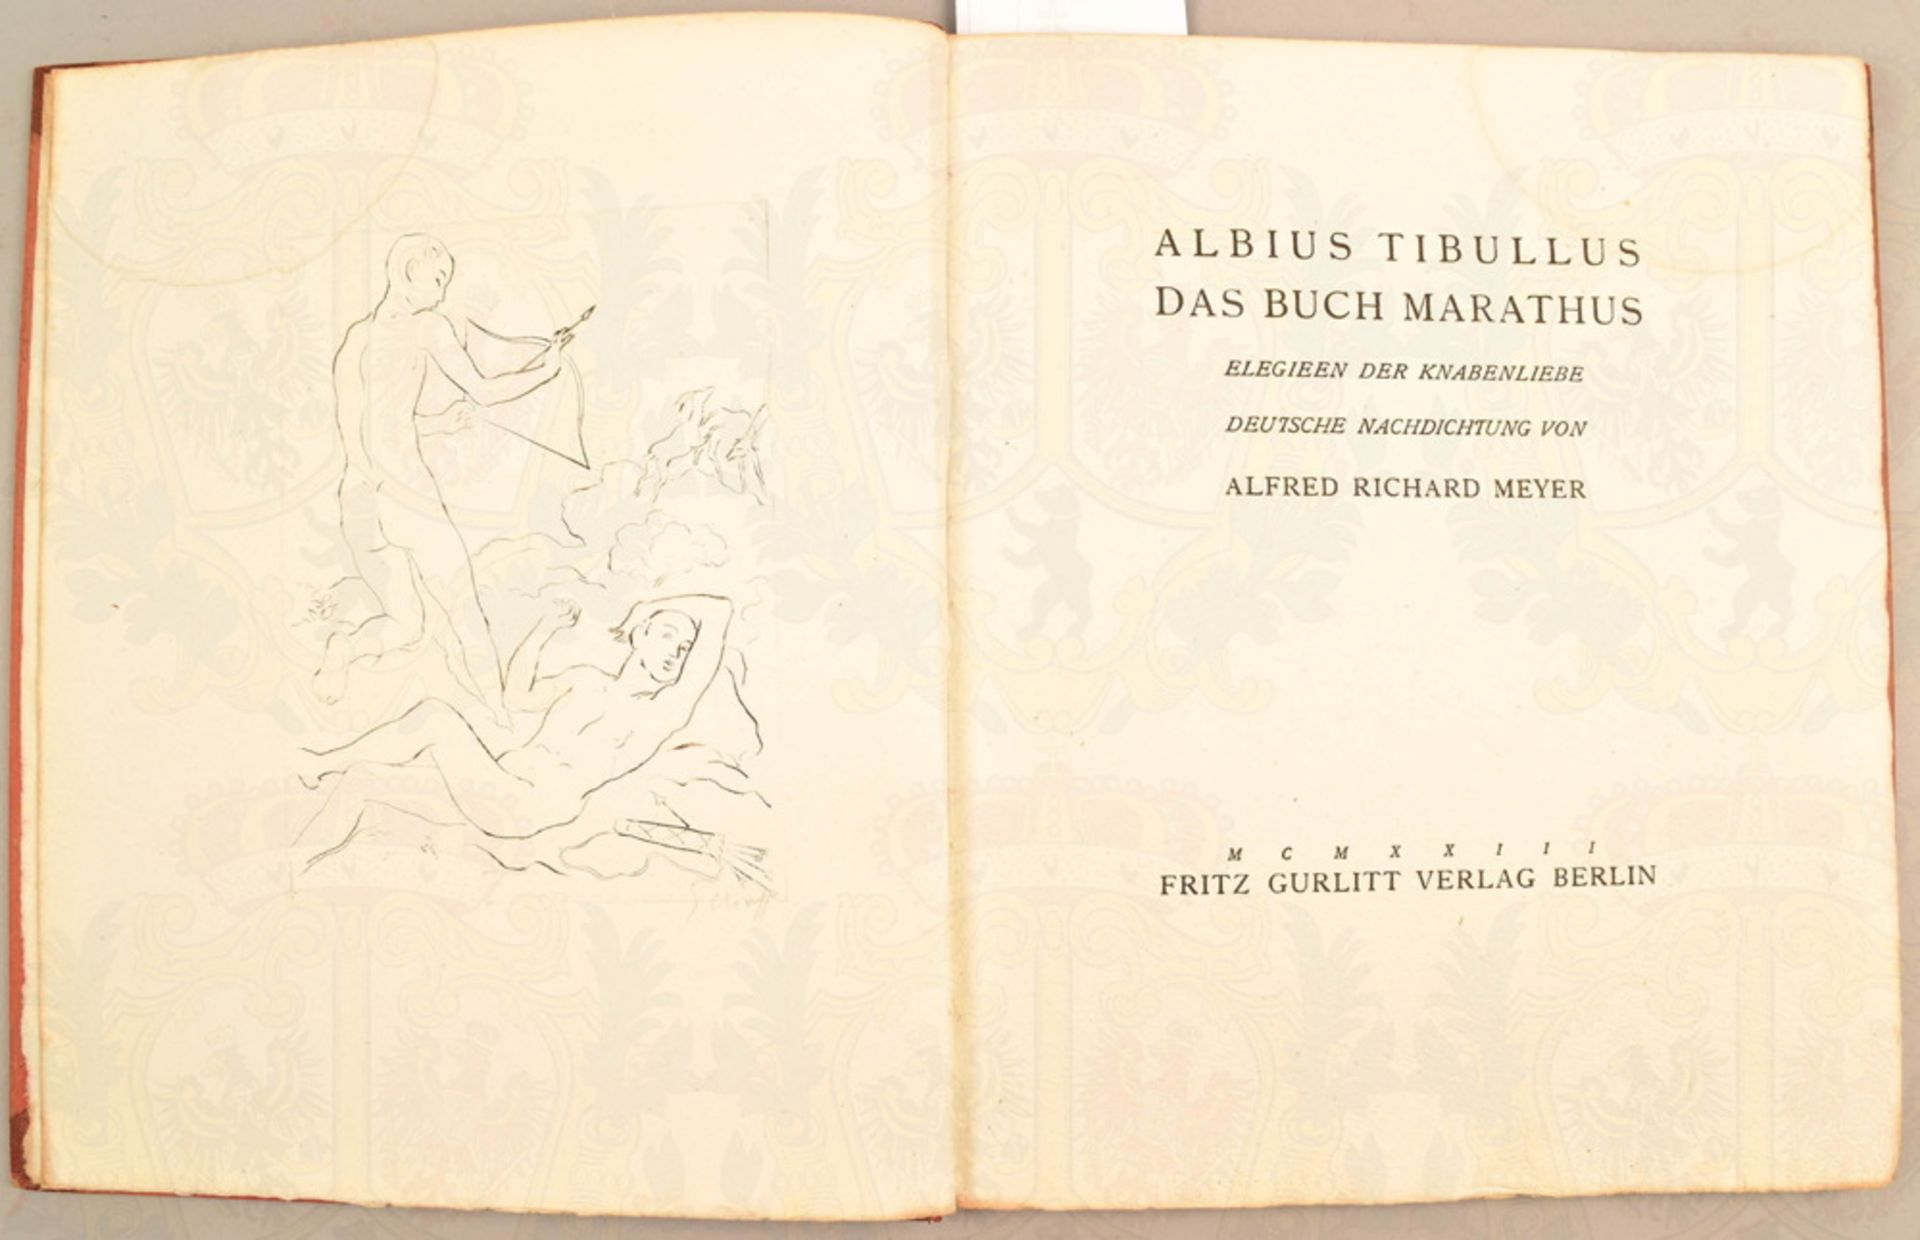 Albius Tibullus Das Buch Marathus - Image 2 of 3